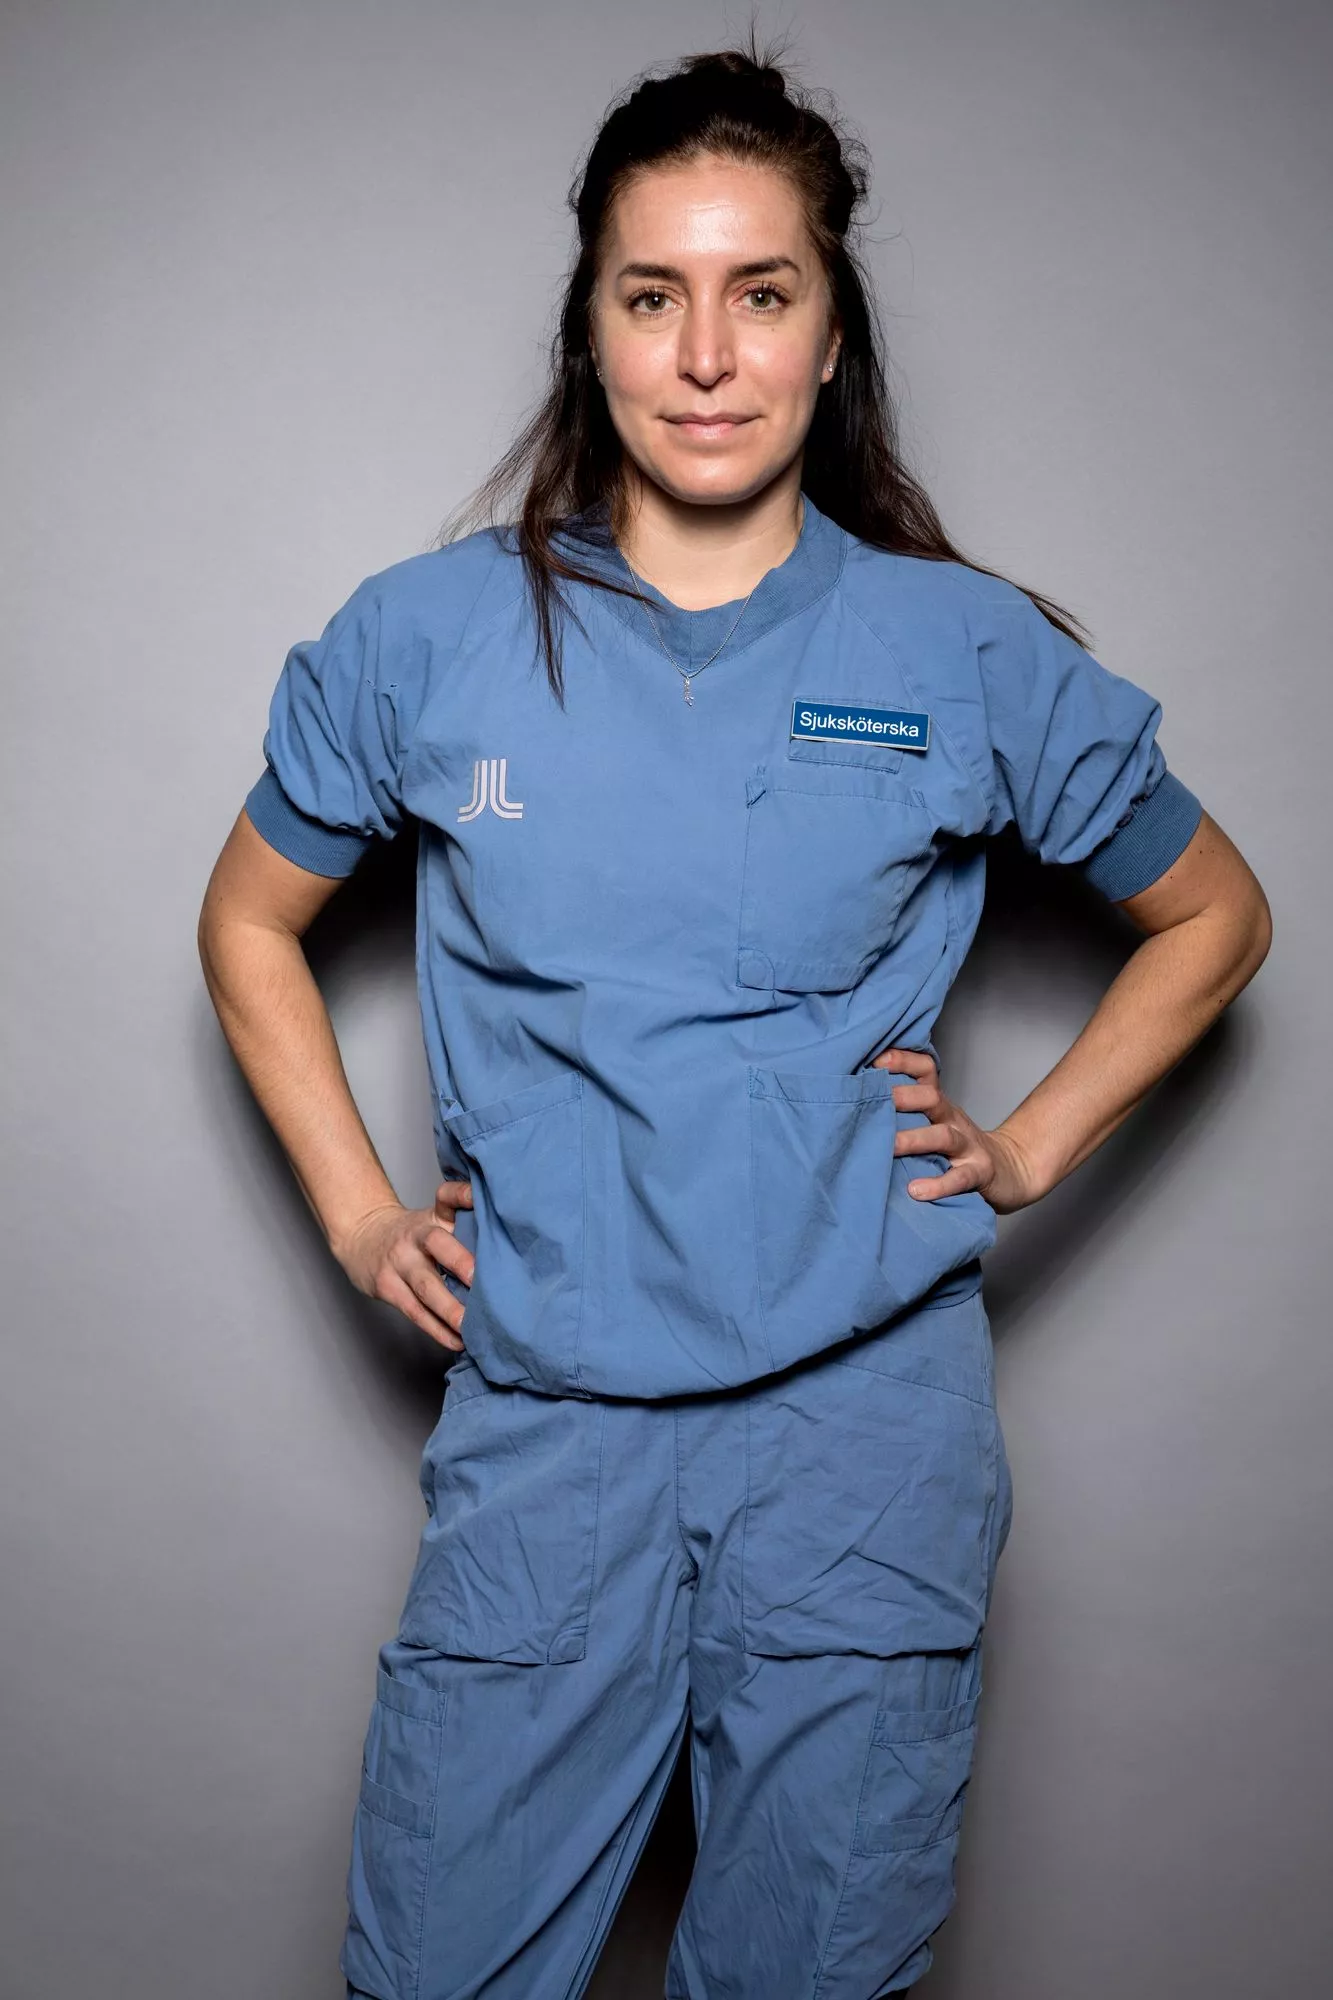 Monica Mörck on ruotsalainen sairaanhoitaja.